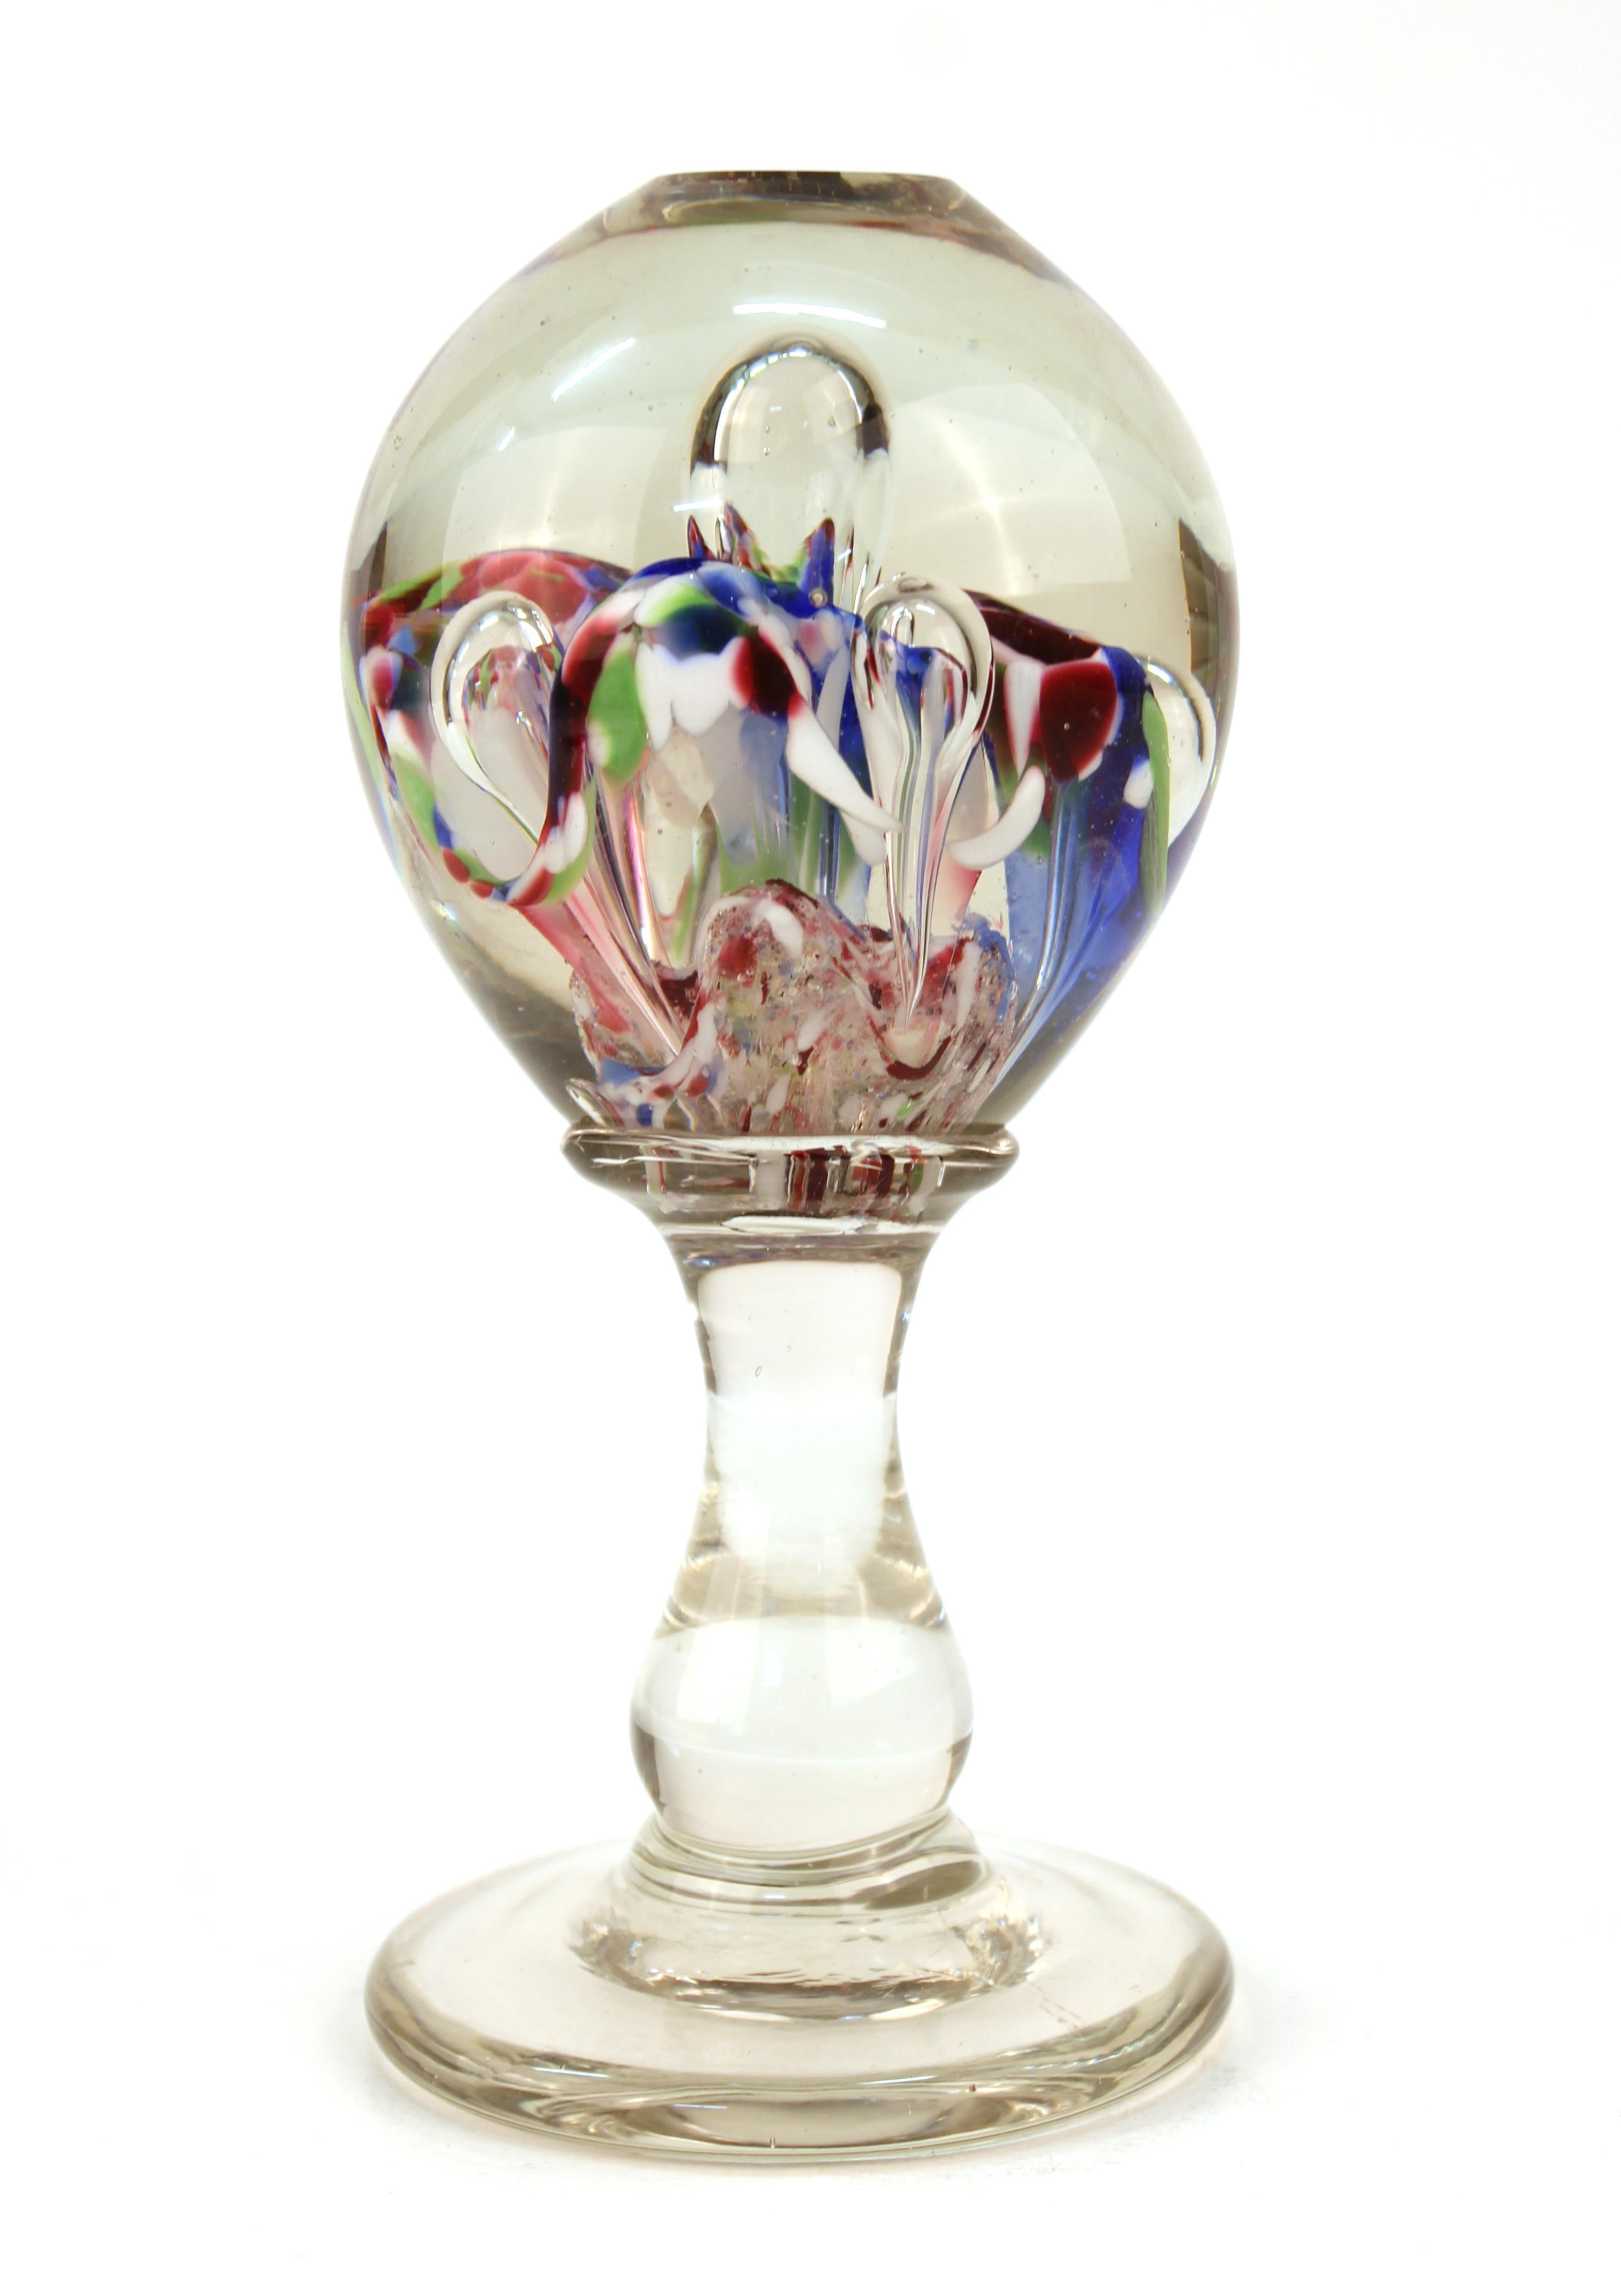 murano glass sphere